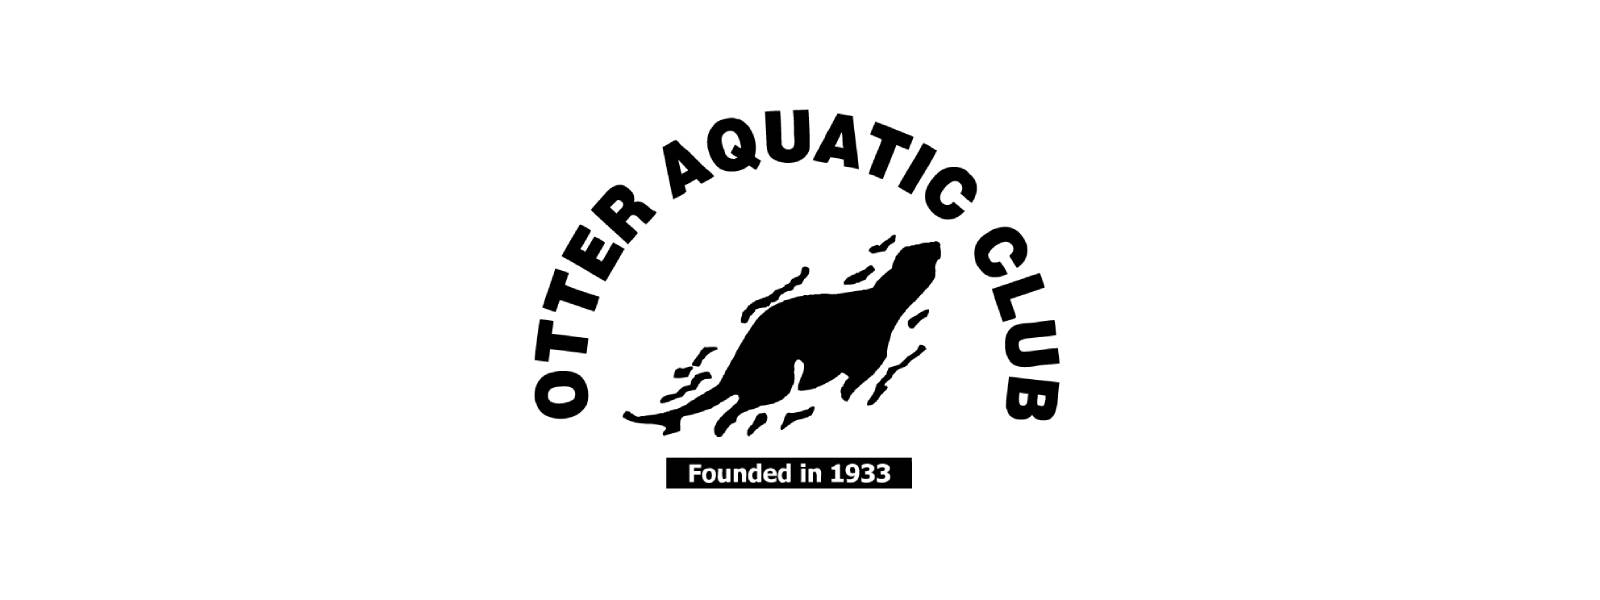 Otter Aquatic Club facing shutdown over tax dues